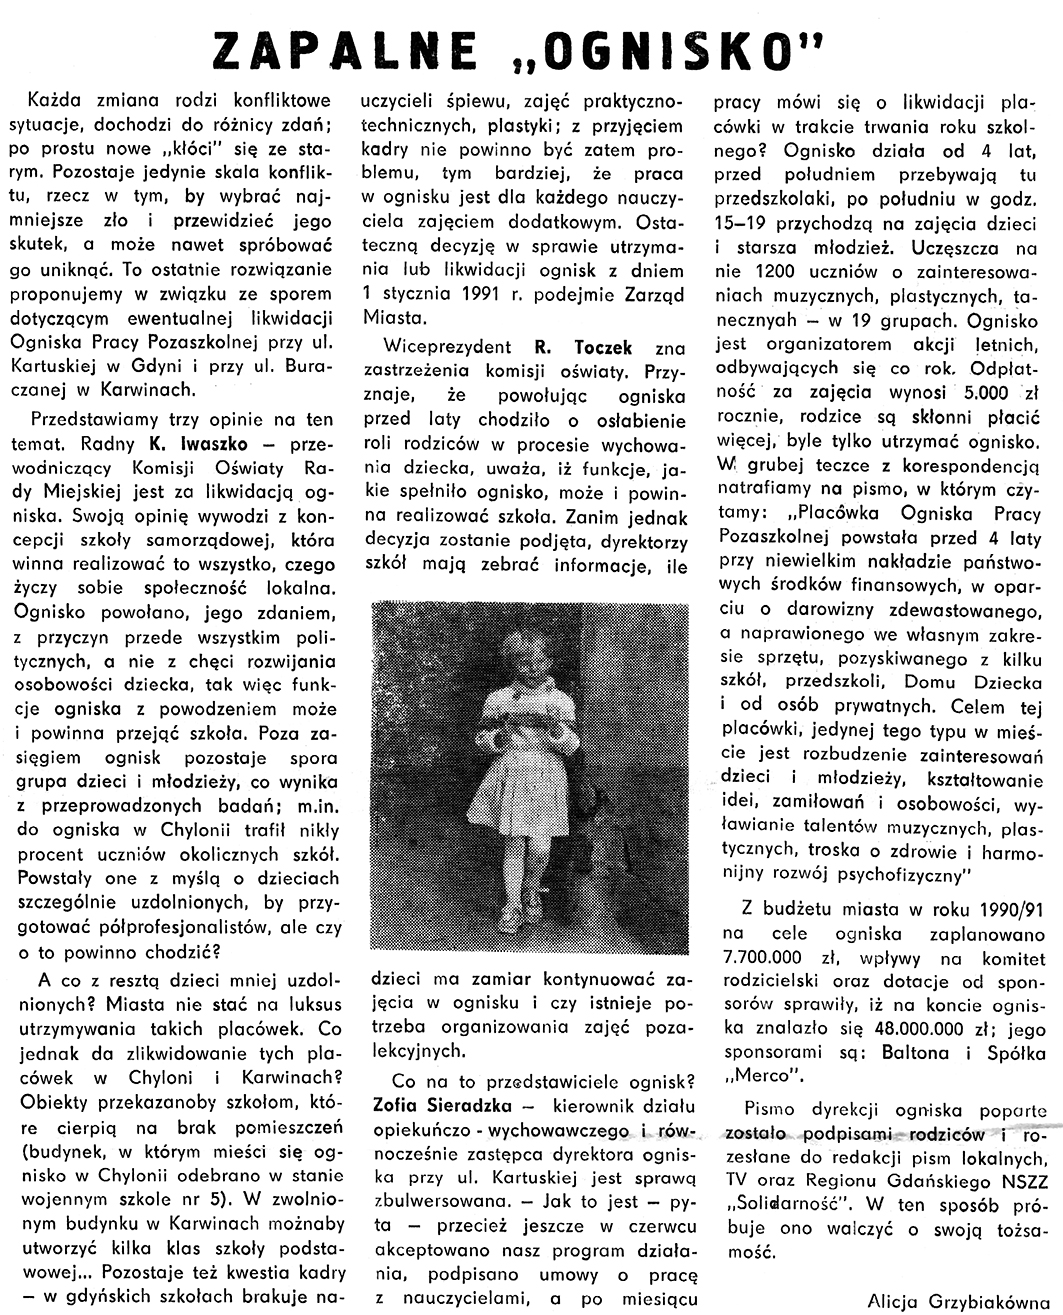 Zapalne "ognisko" / Alicja Grzybiakówna // Gazeta Gdyńska. - 1990, nr 12, s. 6